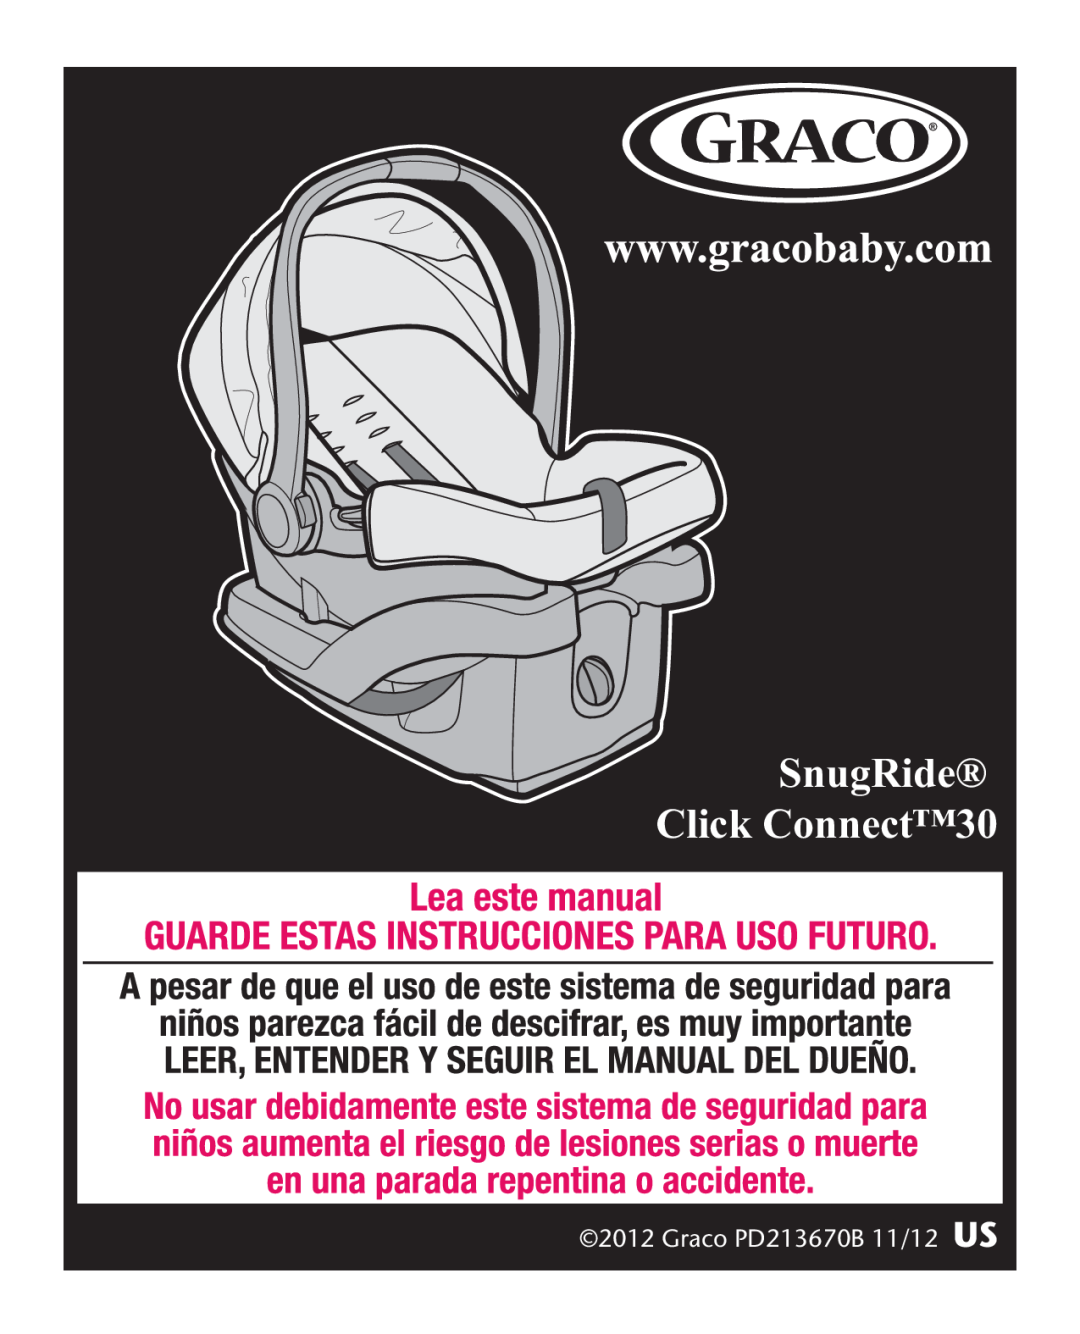 Graco manual SnugRide Click Connect30, Graco PD213670B 11/12 US 